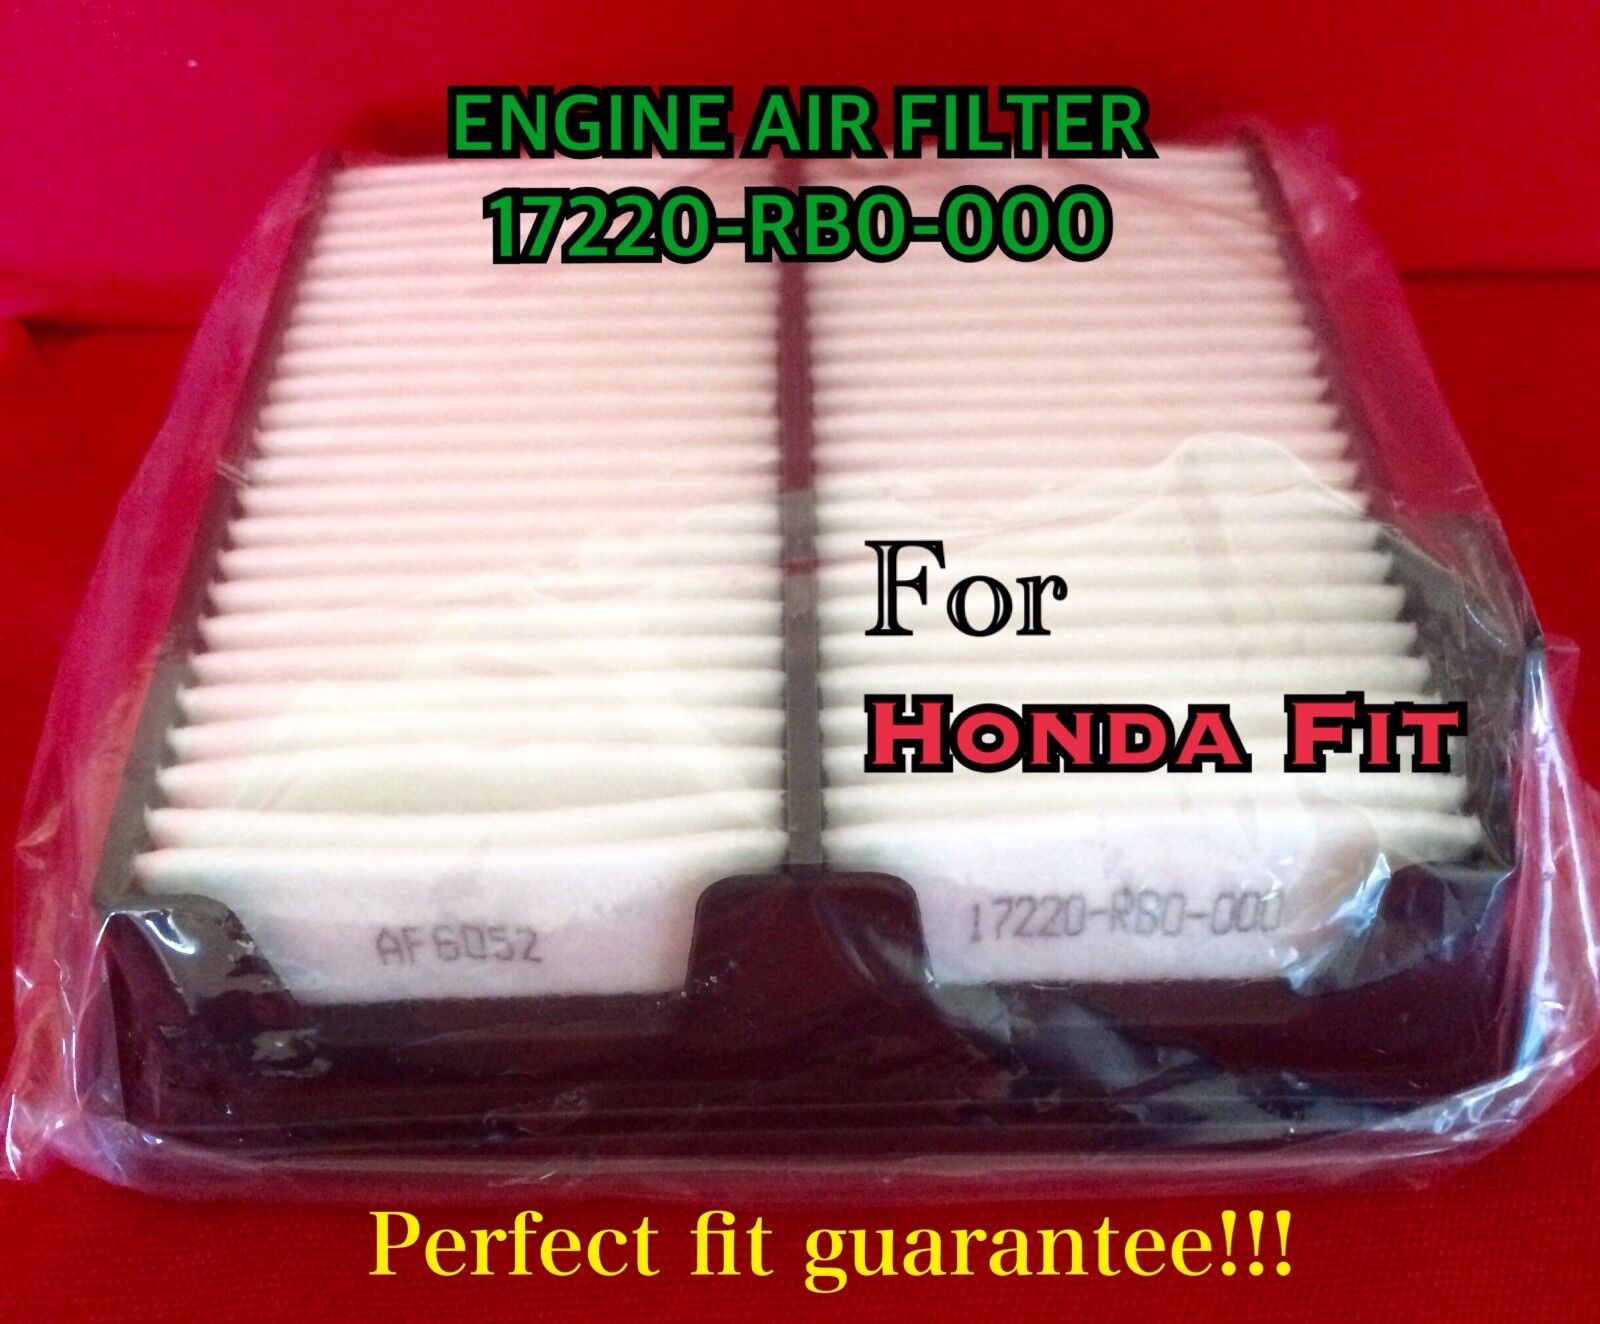 AF6052 for HONDA FIT Engine Air Filter 2009-2013 High Quality filter